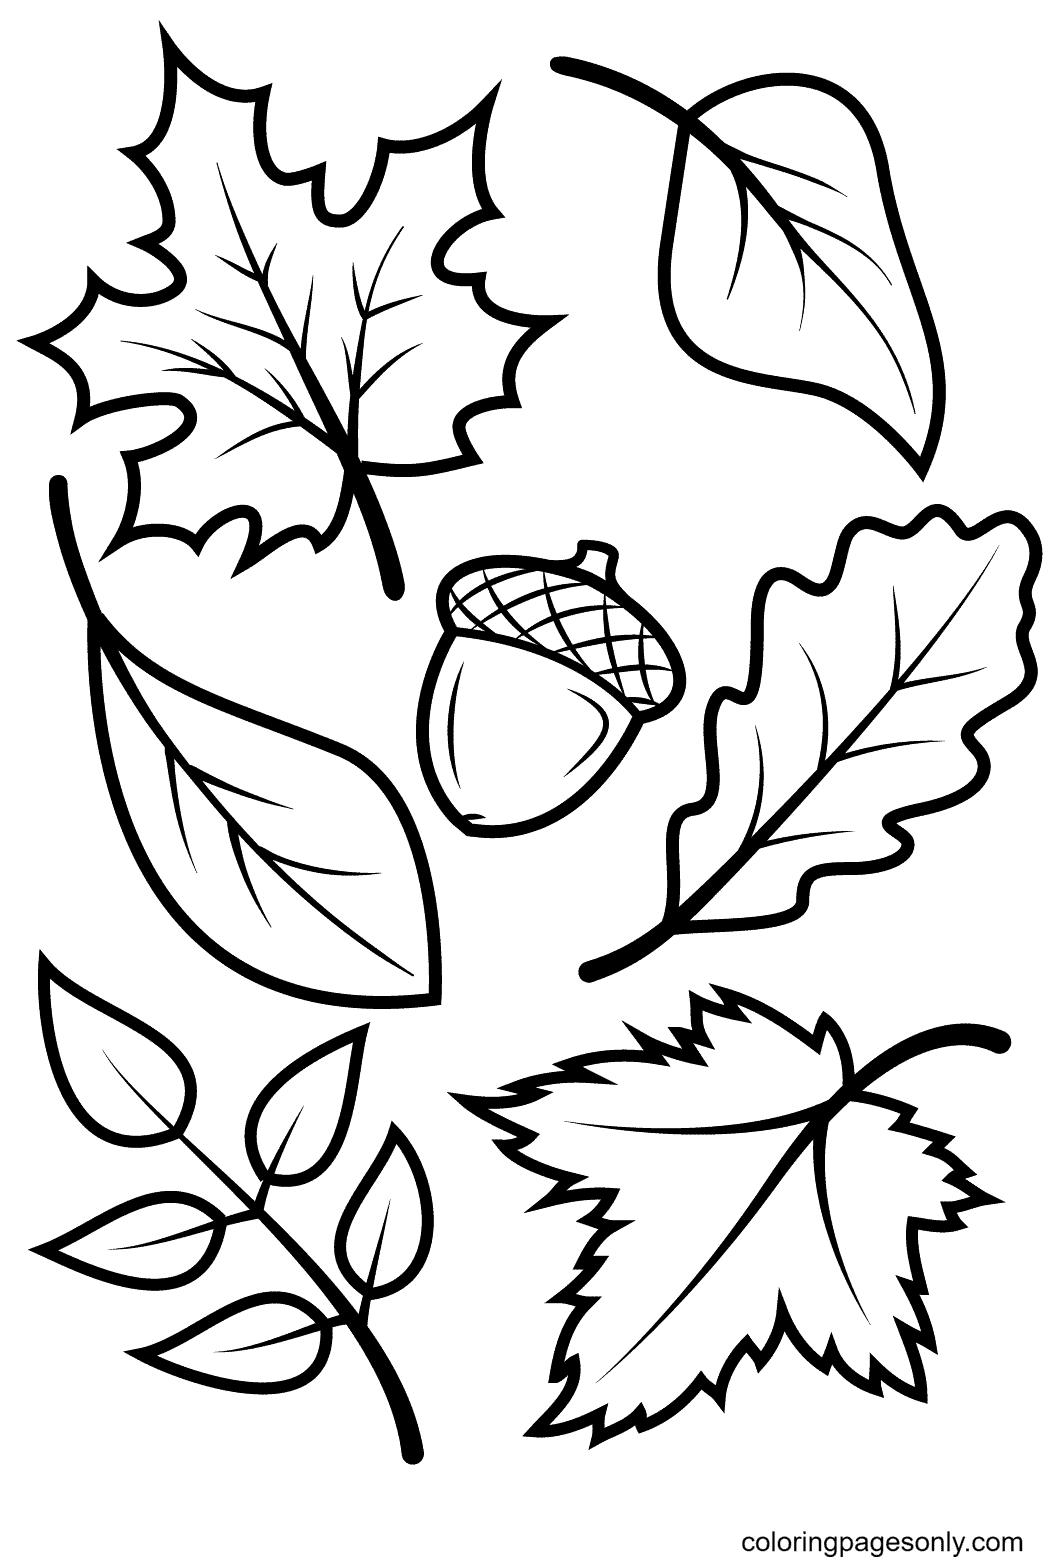 Осенние листья и желудь из осенних листьев